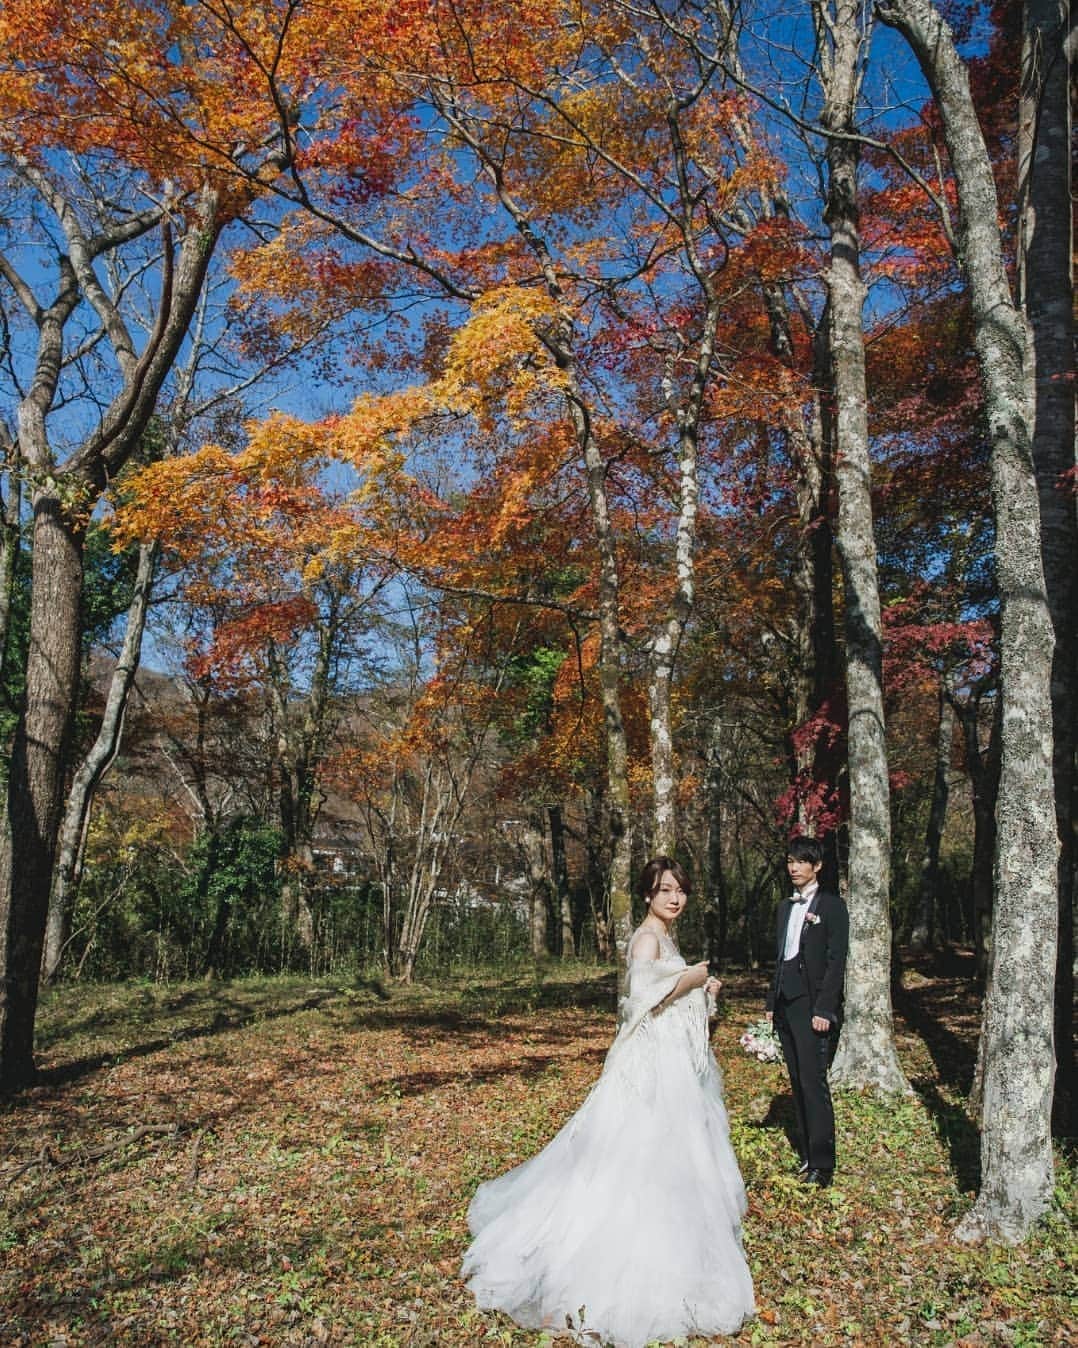 Cli'O mariageクリオマリアージュさんのインスタグラム写真 - (Cli'O mariageクリオマリアージュInstagram)「晴天秋晴れ、11月中旬最高のウエディングフォトトリップ🥀 . お天気も良く、ほんと良かったです、紅葉もすすきも見頃で最高ですね🍁 @lecoeul さんのブーケ💐が、いっそう写真を引き立たせていますね🕊️ . 凛とした空気感の冬が到来してきます、撮影用各種ケープ等のご用意もしておりますので、事前にフォト予約時お問い合わせ下さいね🕊️ . 宿泊のお部屋は、薪ストーブのあるお部屋にも泊まってみたいですよね🌿 . 既に複数の撮影を頂戴しております、随時受付しておりますので、先の御予約もお部屋のリザベーションもございますから、計画的なプランをおすすめしています🥀 . 旅と建築と… 自然と食事… お気に入りの写真と… コーヒー☕ .　　　　　　　　 思い出を紡ぐ… . 春夏秋冬 . 余韻の残るフォトウエディングの旅 お気に入りの宿… . 🕊️Wedding Photo Trip🕊️ Hakone Retreat × Cli'O mariage 自然アートを切り取ったような宿泊コラボレーションウエディングフォト🌿 . 人気の施設、素敵なクリエーター達ですから、撮影日や宿泊の日程タイミング合わせは、なるべくお早めをお薦め致します🌿 . ★ホームページが完成★ https://www.cliomariage.com/weddingphototrip/ 箱根リトリートとの宿泊コラボレーションフォトスタートです🕊️ . 【Wedding photo trip 】 hakone retreat×Cli'O mariage @hakone.retreat  @cliomariage お問い合わせは、クリオマリアージュが担当しております🕊️ . クリオマリアージュのLINE等でお気軽にお問い合わせ下さいね✨ . 都会の喧騒を離れ、都心からもっとも近い自然の癒しと北欧を感じる箱根リトリートに宿泊し、施設内や仙石原でマイナスイオンたっぷりのフォトウエディングと旅を楽しむのは、お二人にとって思い出深きものになります🕊️ . 拘りのドレスやタキシード、印象的な写真は勿論、ご家族ご親族と一緒に宿泊して大切な思い出に🌿 大切な家族だからこそ、穏やかな場所と時間で結婚を祝いたい、親族のお披露目をしたい、施設内の料亭（俵石）やフレンチレストラン（WOODSIDE dining）でも皆様でお食事も、家族の為のウエディングケーキもオーダー可能です🍃 . 勿論お二人で思い出深いフォトウエディング、更にどのお部屋にするか選ぶのも楽しみです、北欧家具に囲まれた広いお部屋に、薪ストーブのあるお部屋に、森の中の露天風呂付コテージにと、二人で決めてゆくのも楽しいひと時です🕊️ . 記念日ごと、家族の祝いの日にまた訪れたい場所とクリオマリアージュがコラボレーション、素敵なフォトウエディングのために 【Wedding photo trip】 hakone retreat×Cli'O mariage 箱根リトリート×クリオマリアージュがスタート🌿 . 結婚式はしないと決めている方、結婚式の延期や中止されたカップルや、両親に感謝の気持ちを伝えるためのアルバムが欲しい、前撮り後撮りも思い出深いものにしたい、ご家族や親族と一緒に楽しみたい、親しい友人とも思い出にしたい、そんなお二人にぜひおすすめしたいフォトウエディングの旅🕊️ 詳細は専用ホームページをご覧くださいませ。 https://www.cliomariage.com/weddingphototrip/  . ★リアルなクリオマリアージュブライズをご紹介しております⏬  @cliomariage_brides ★パーティーや花嫁アクセサリーのご購入検討中の方はこちらをご覧ください⏬ @cliomariage.shop . The request of photo wedding is also possible. Please make an appointment. ↓↓↓ ☏+81-3-3770-9722 ✉info@cliomariage.com 1-16-16-5F Dogenzaka,Sibuya,Tokyo #cliomariage #photowedding #クリオマリアージュ #フォトウエディング #ウエディングフォト #ウエディングドレス #ドレス試着 #結婚準備 #ドレス探し  #結婚式はしない #前撮り #後撮り #リゾート婚 #アウトドアウエディング #プレ花嫁 #卒花嫁  #高身長花嫁 #家族婚  #2020冬婚　#2021春婚　#婚約 #ドレス迷子 #結婚式延期 #箱根リトリート #箱根旅 #weddingdress #結婚しました」12月6日 19時44分 - cliomariage